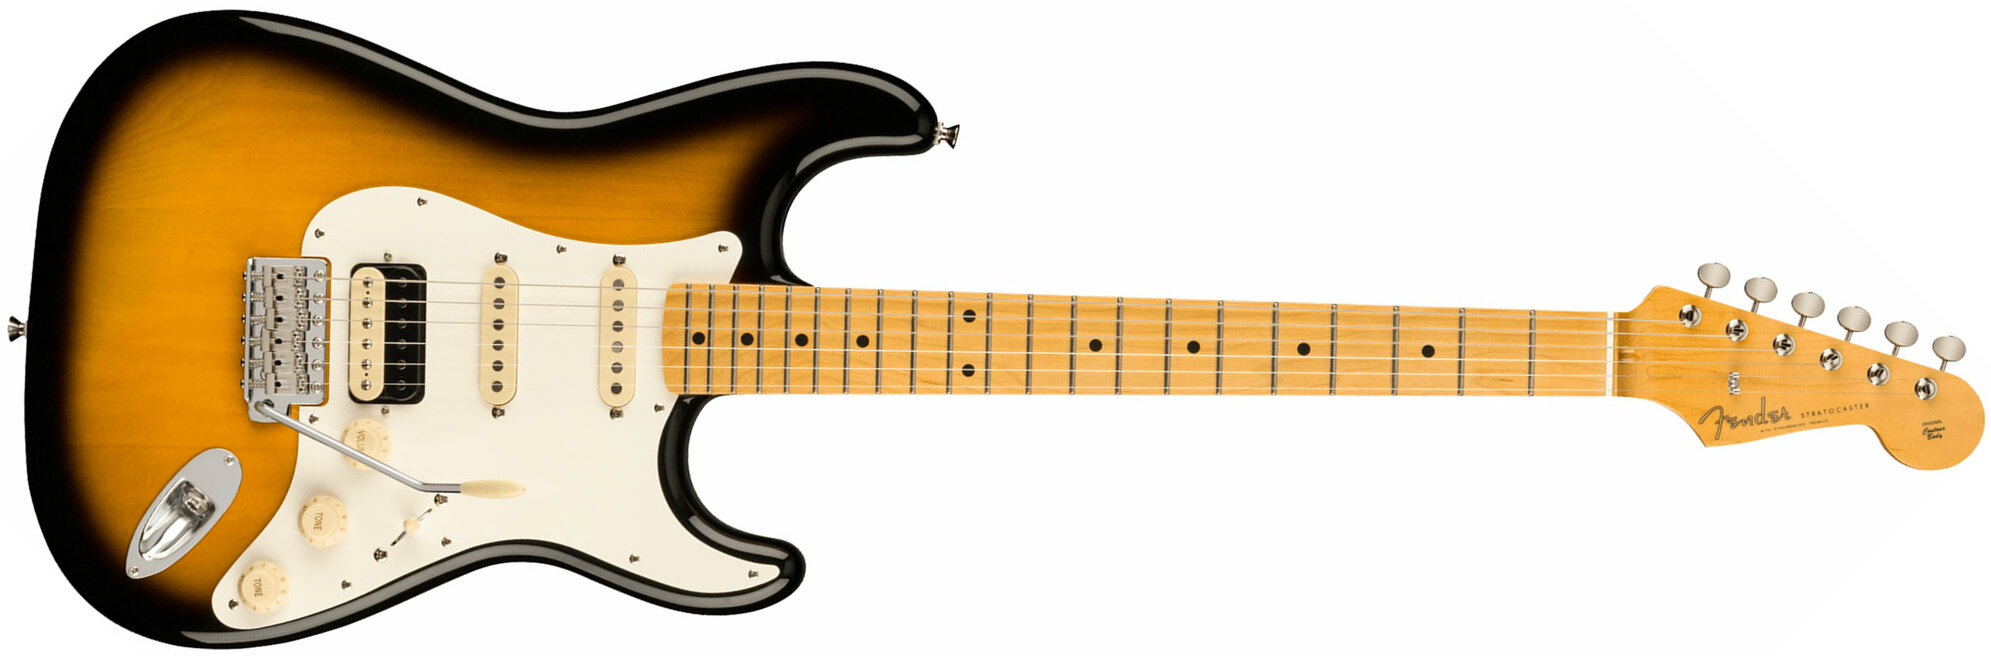 Fender Strat Jv Modified '50s Jap Hss Trem Mn - 2-color Sunburst - Guitarra eléctrica con forma de str. - Main picture